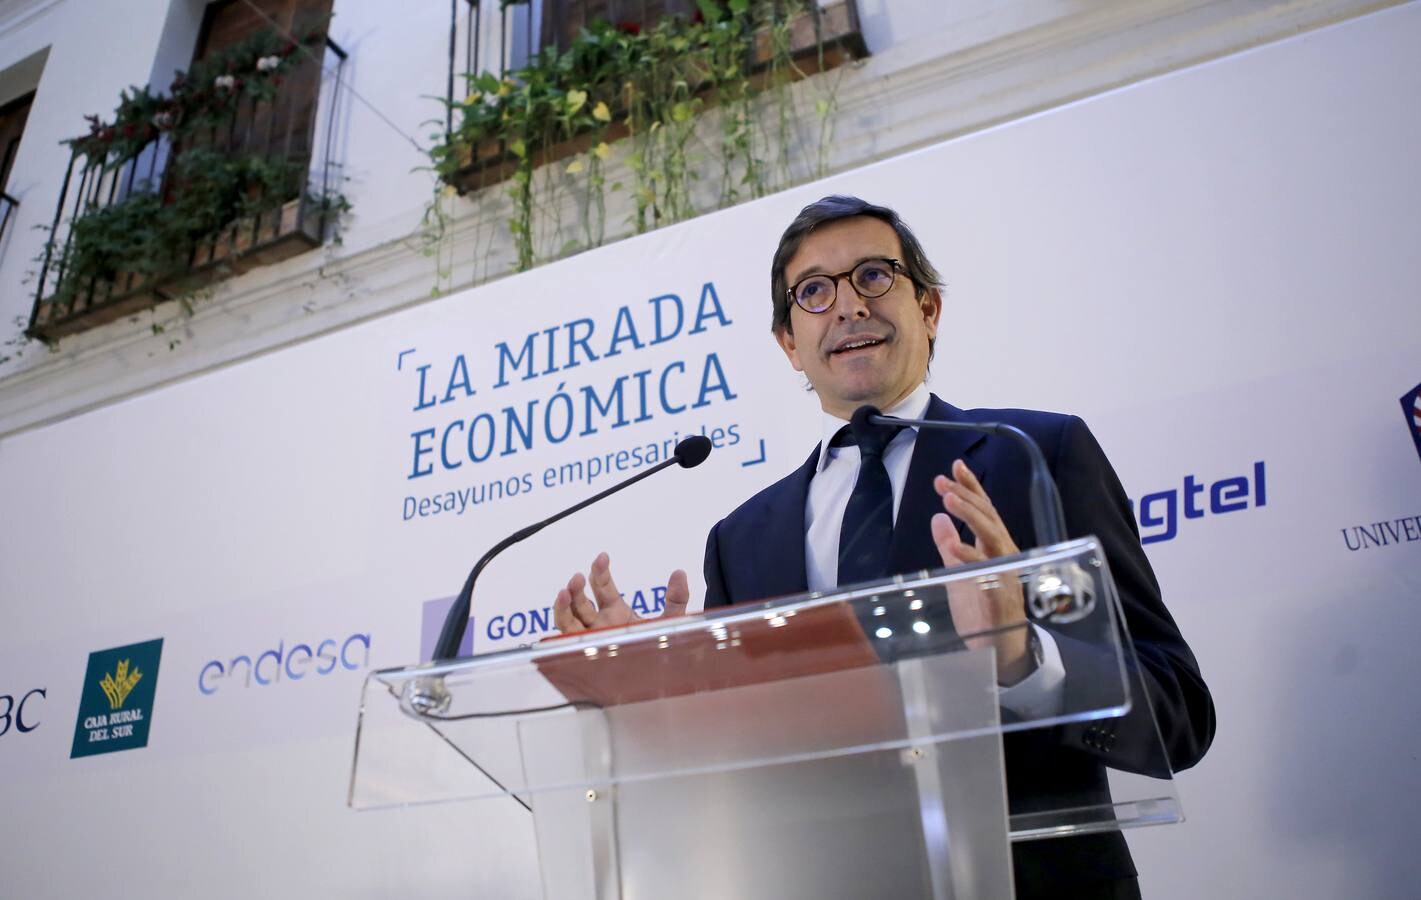 Jorge Paradela (Heineken España): «La rentabilidad económica no basta, hay que apostar por un fin social»